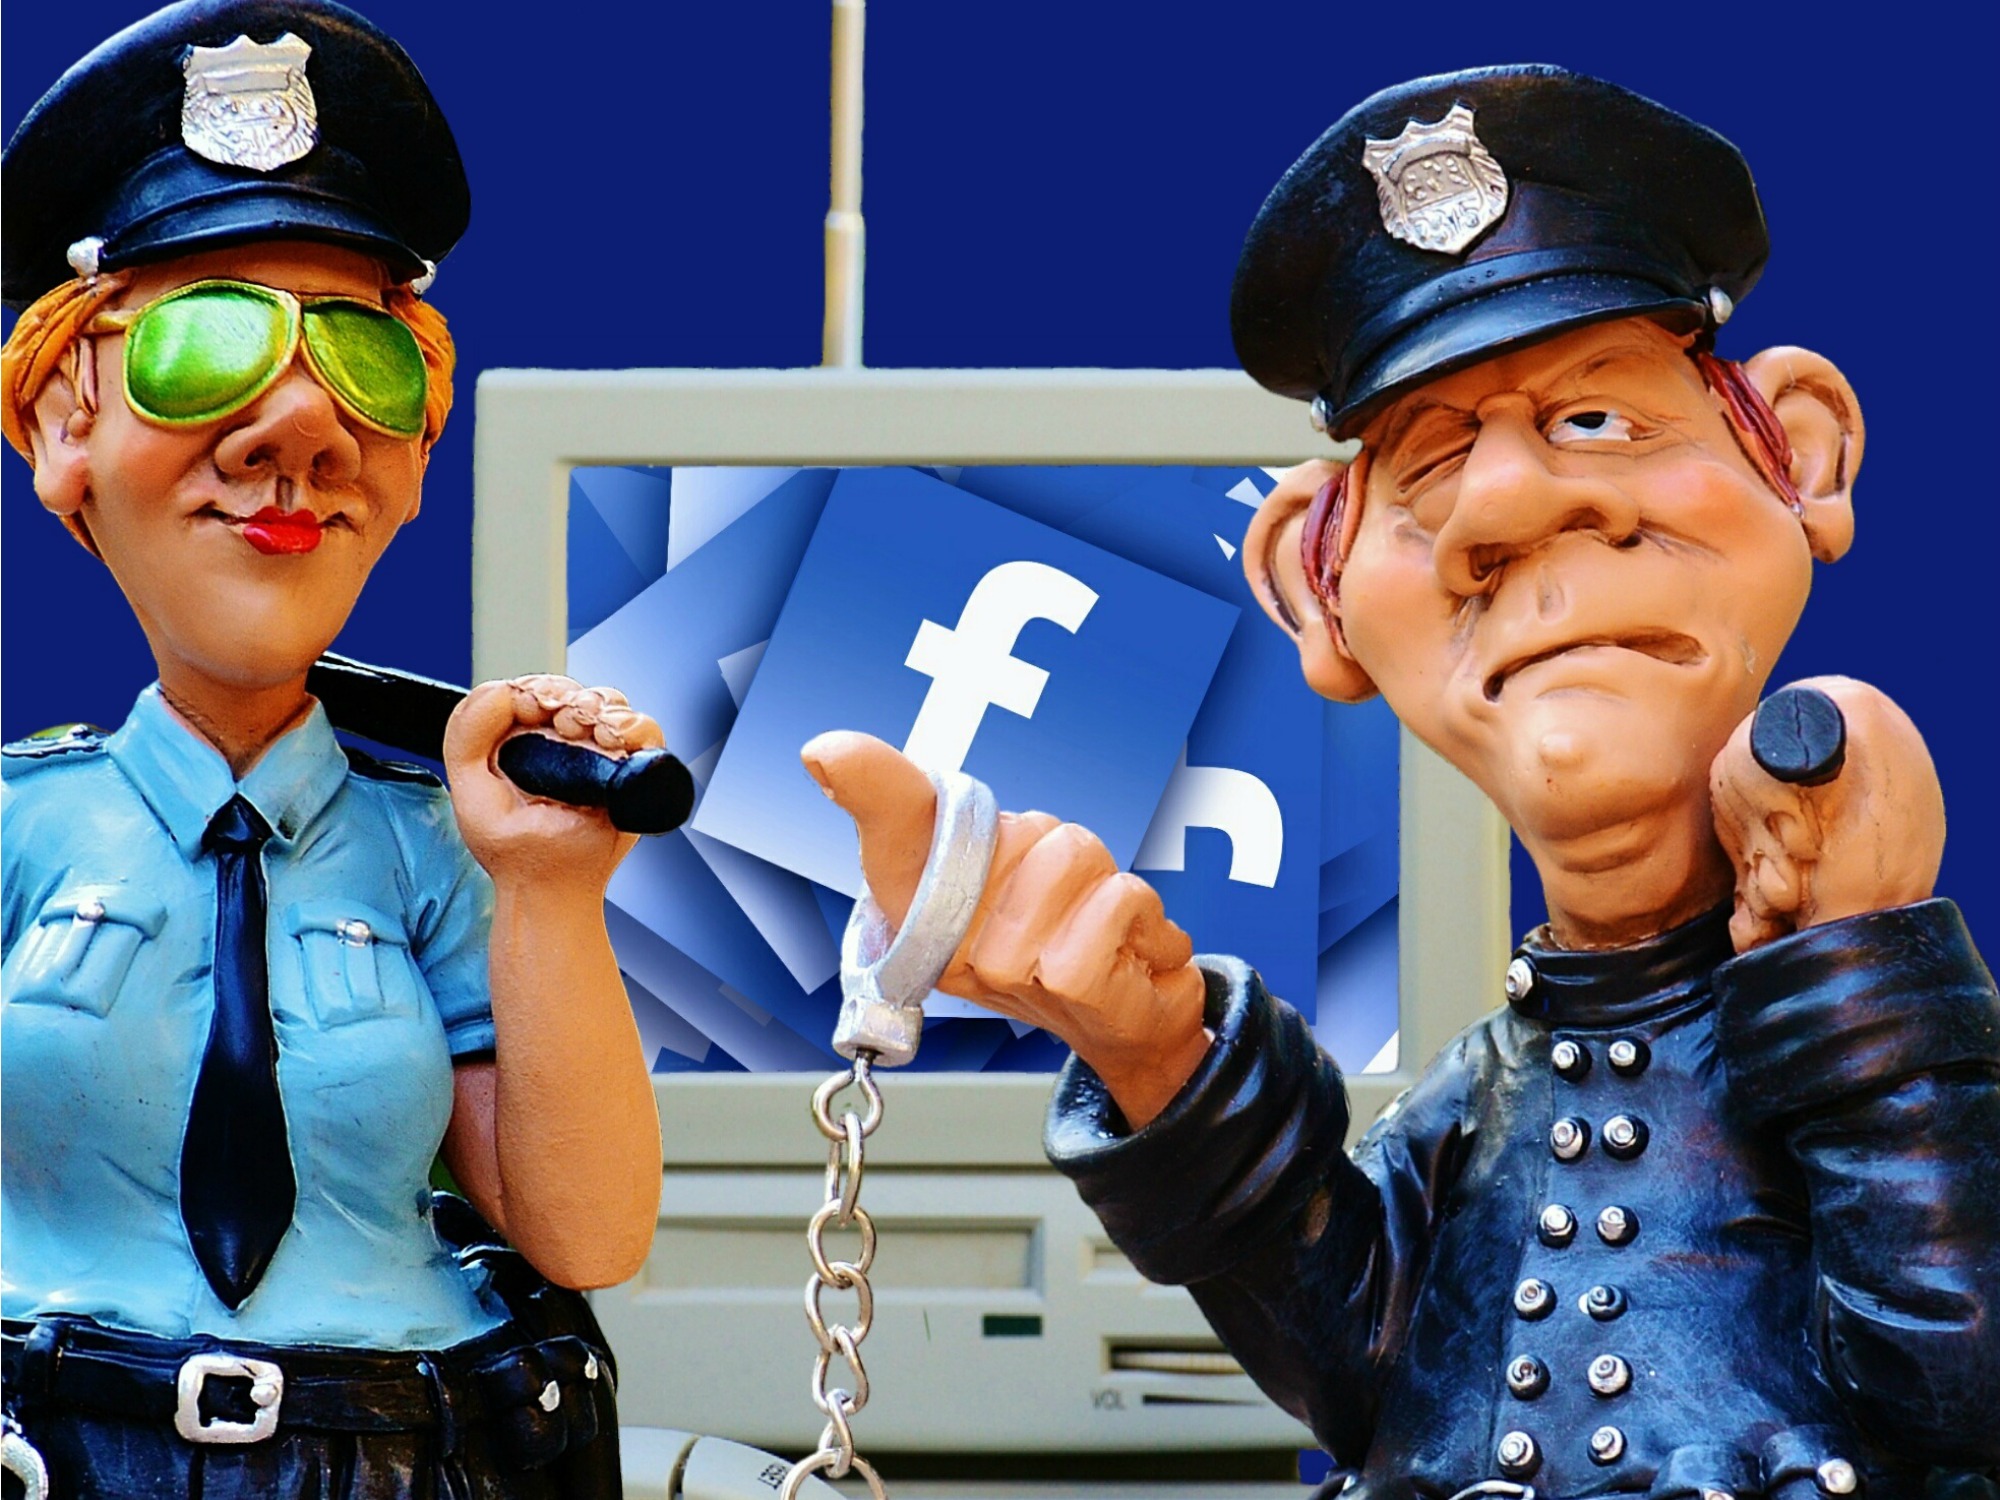 facebook nepnieuws nu.nl nieuwscheckers leiden